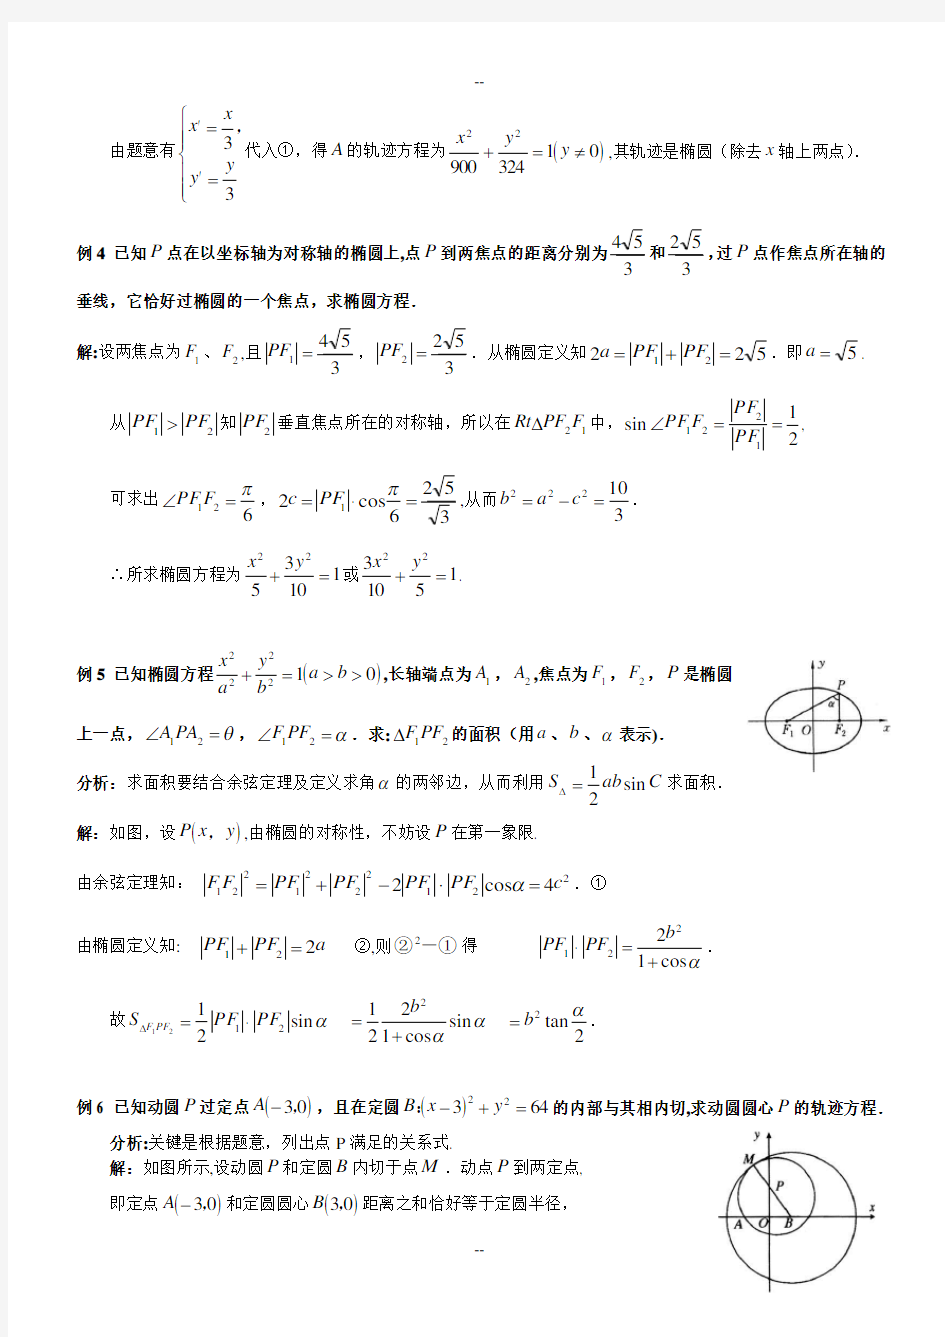 高中数学椭圆经典例题详解-2